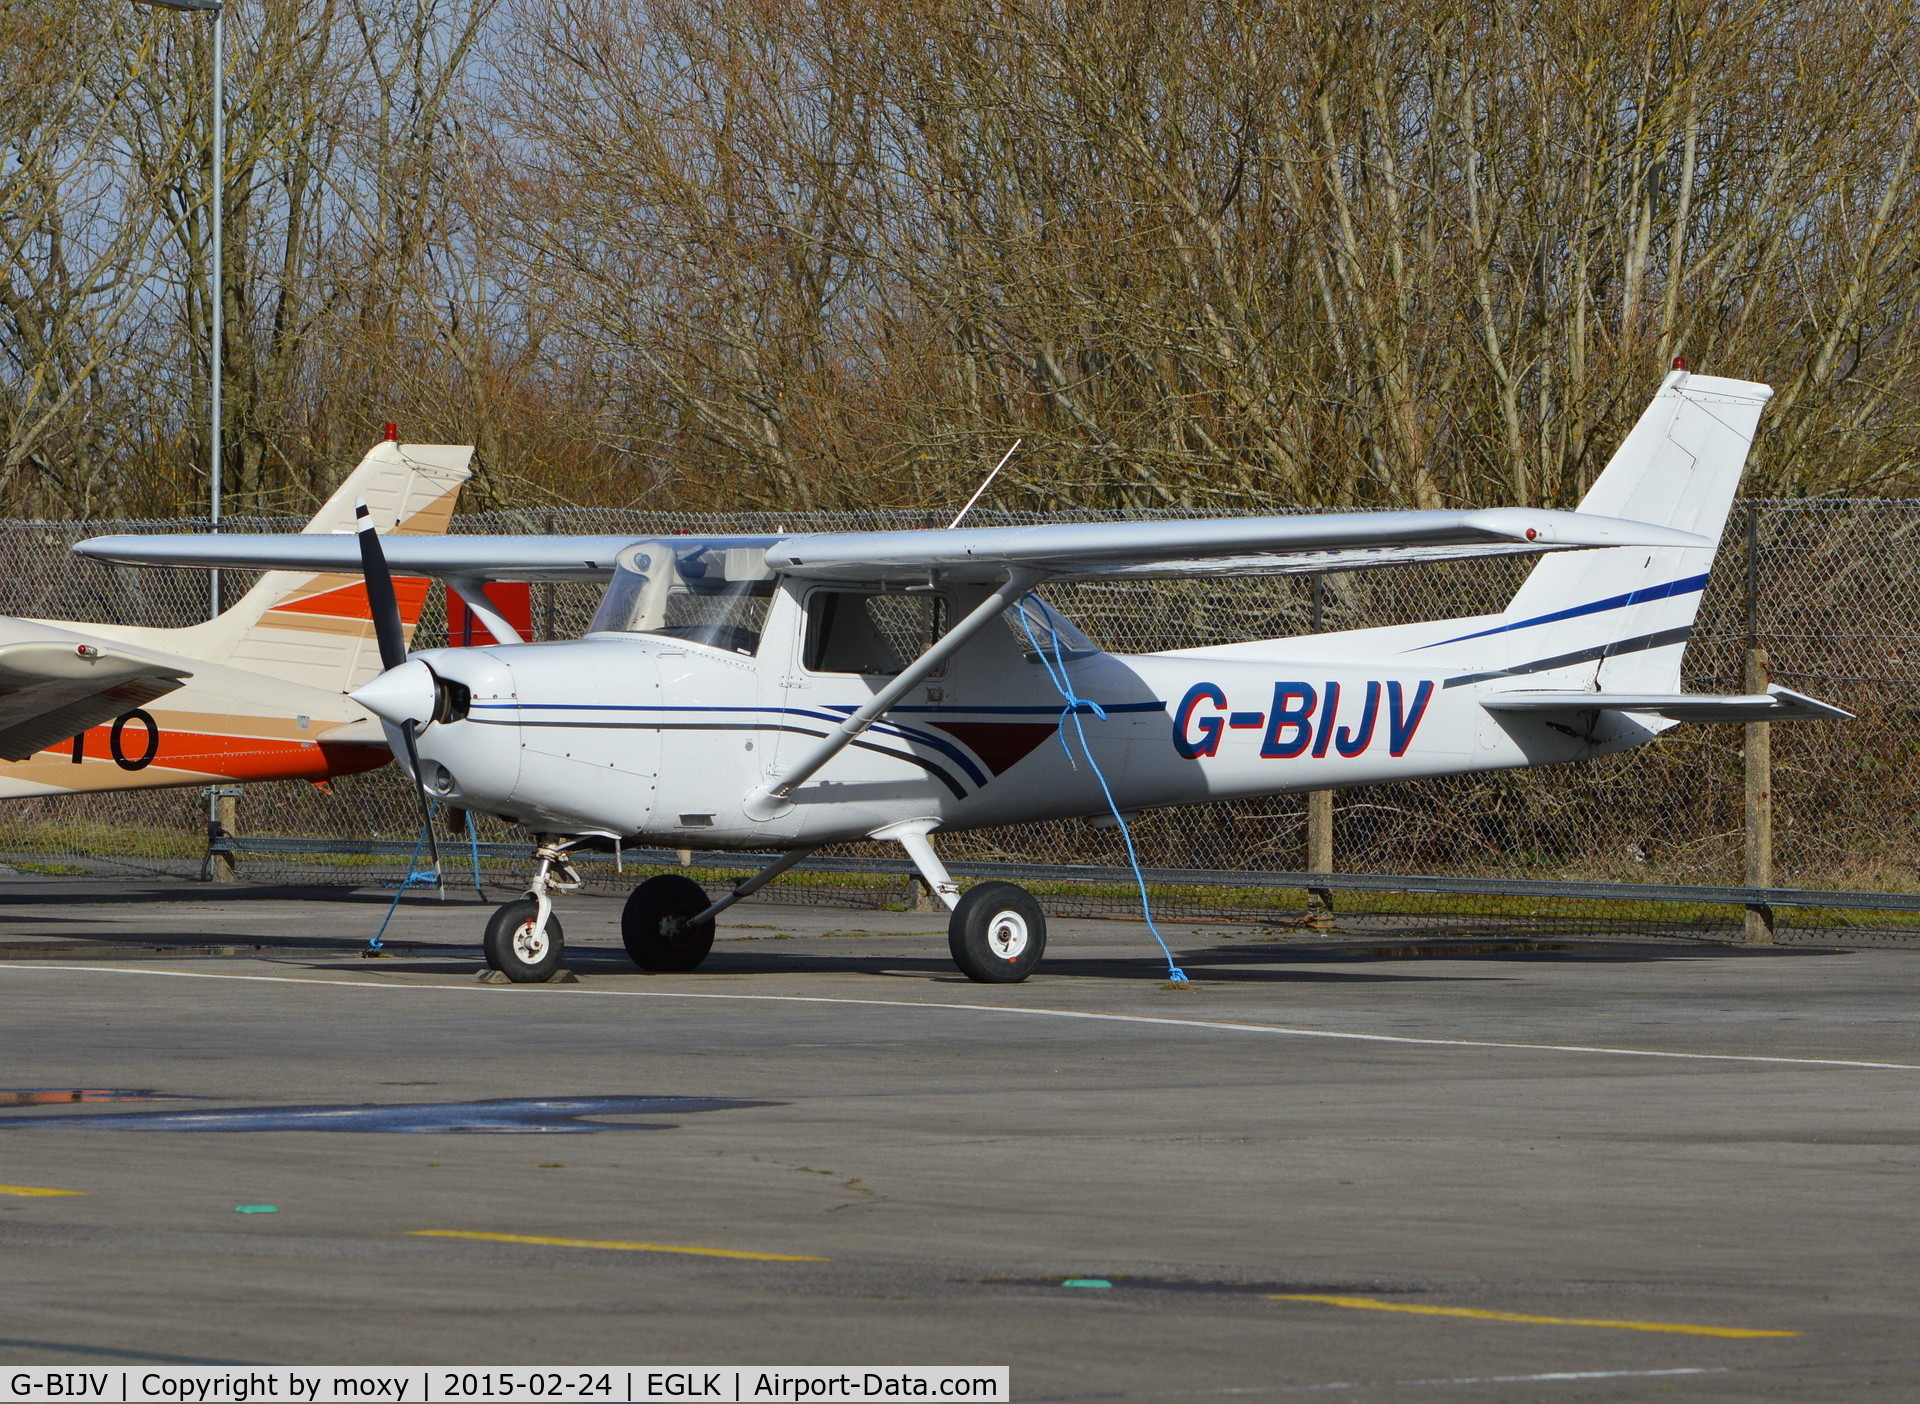 G-BIJV, 1981 Reims F152 C/N 1813, Reims Cessna F152 at Blackbushe.